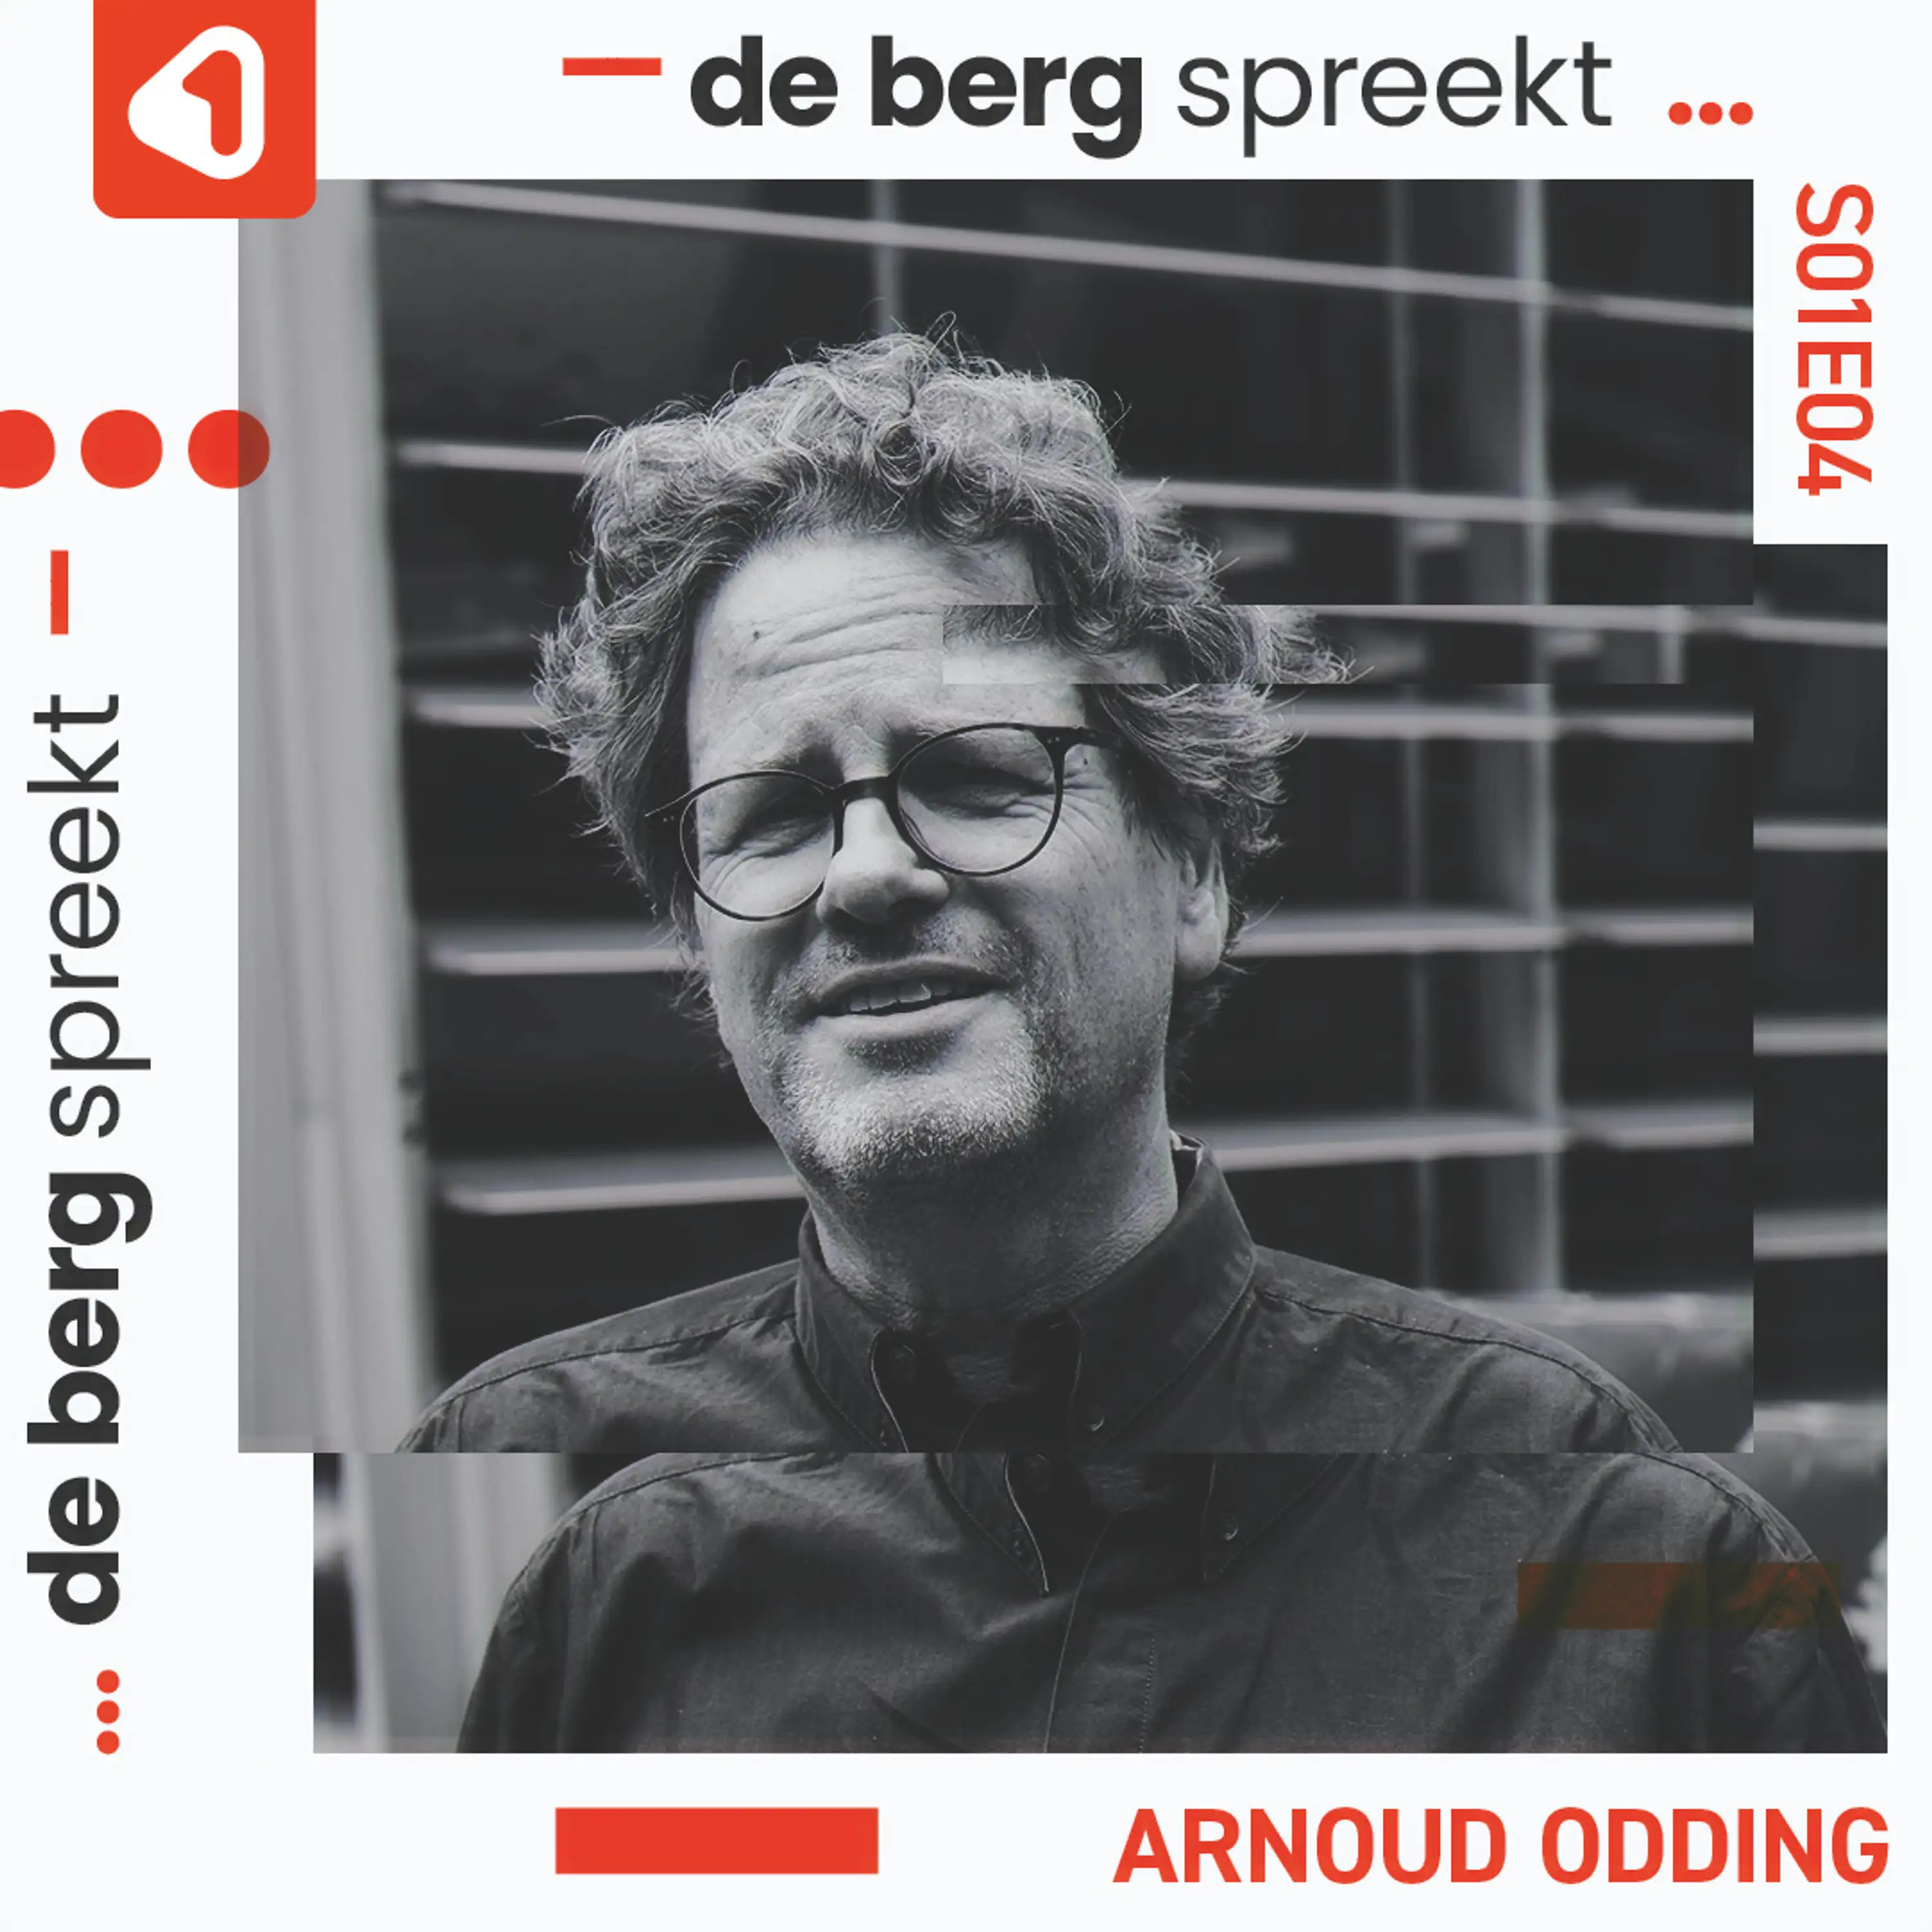 De Berg spreekt... museumdirecteur Arnoud Odding